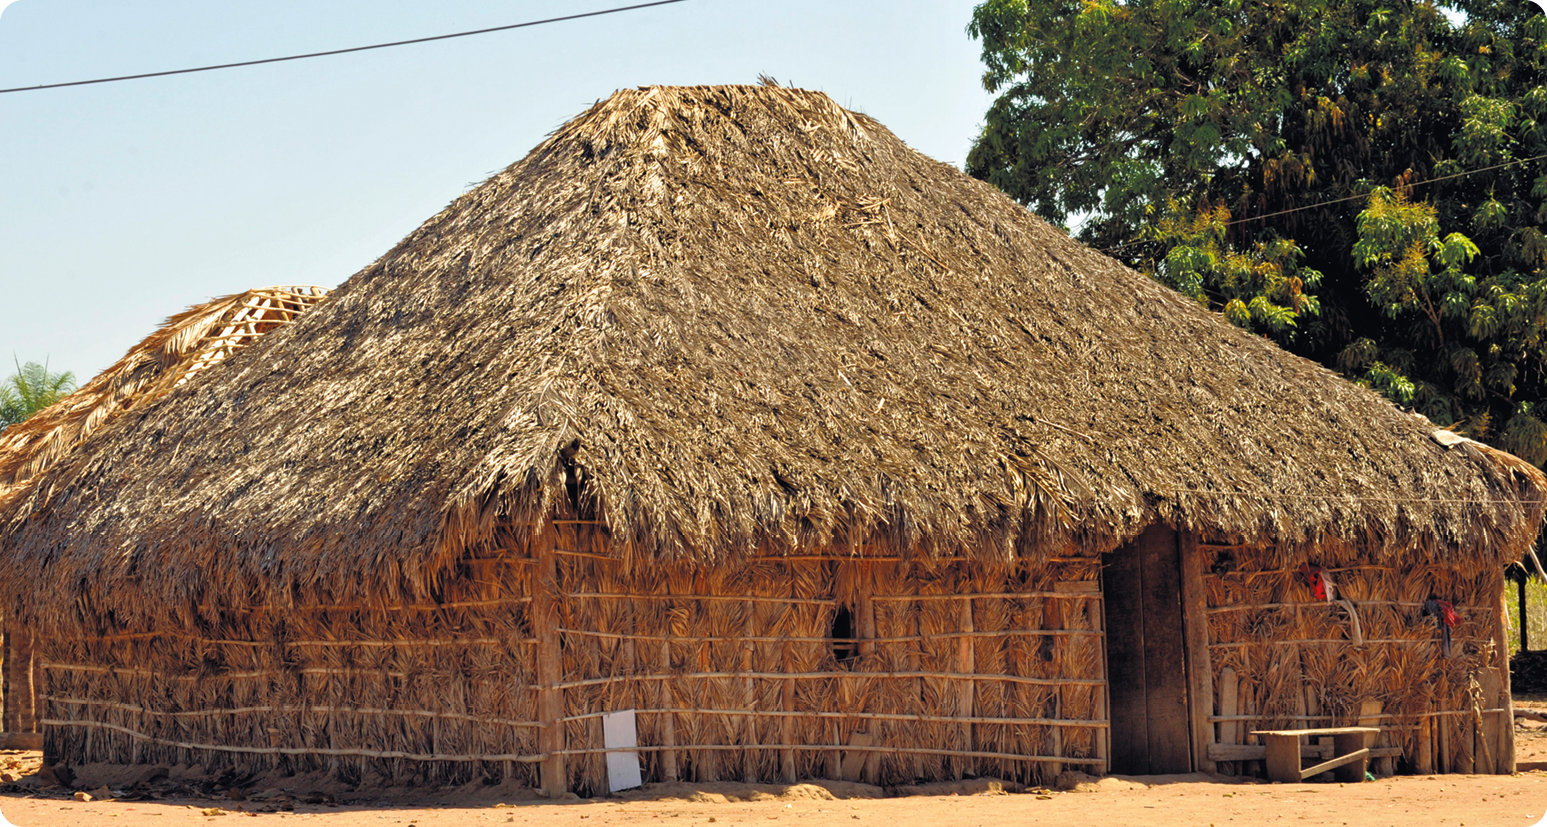 Fotografia. Uma moradia indígena com base retangular e teto em formato triangular feita de madeira e palha.